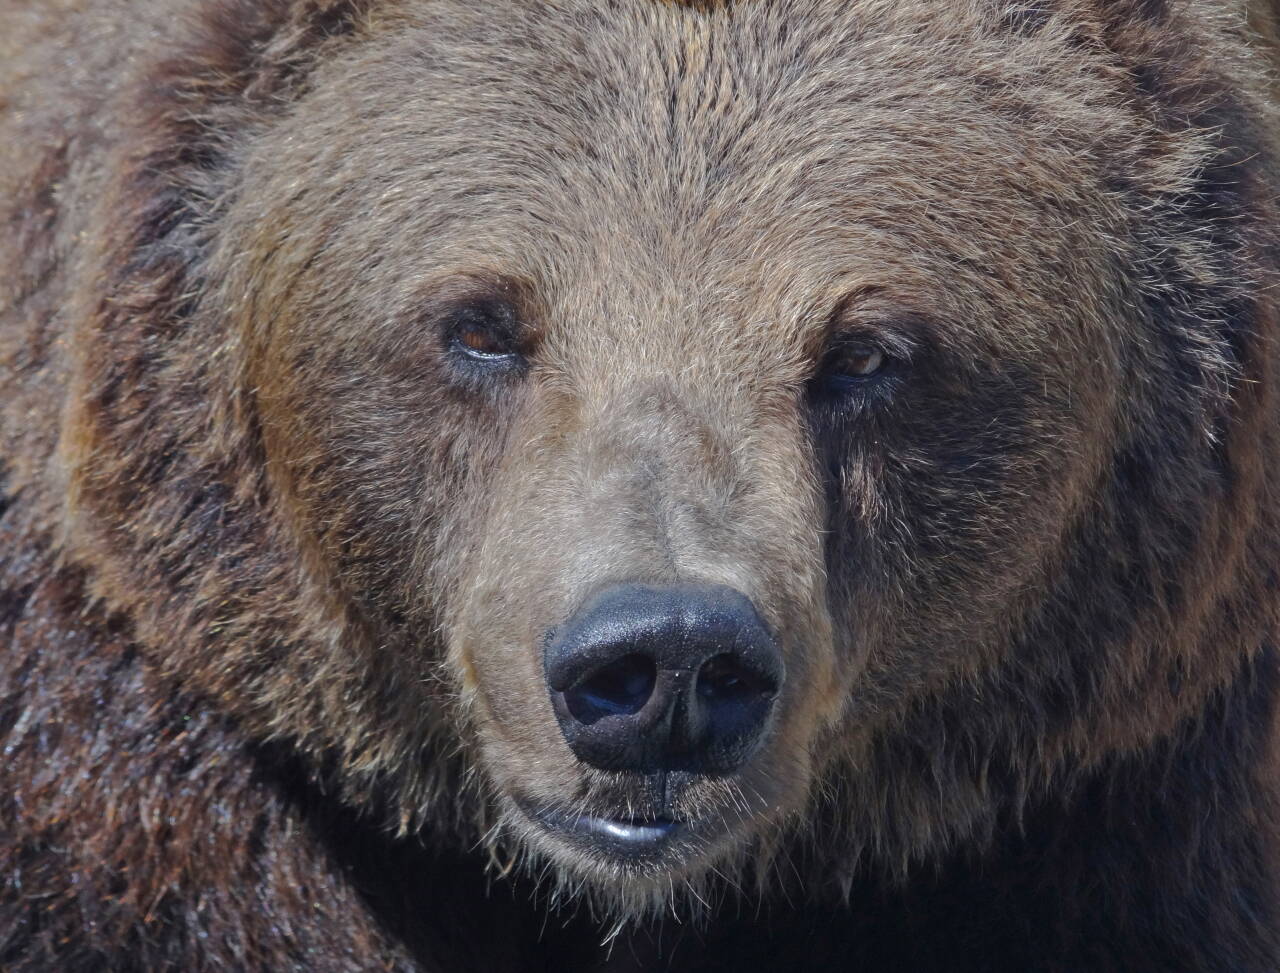 Brunbjørnen eter seg god og feit før den slapper av i et halvår. Slikt ville skapt problemer hos mennesker, men bjørnen er like frisk om våren som om høsten. Foto: Per Løchen / NTB